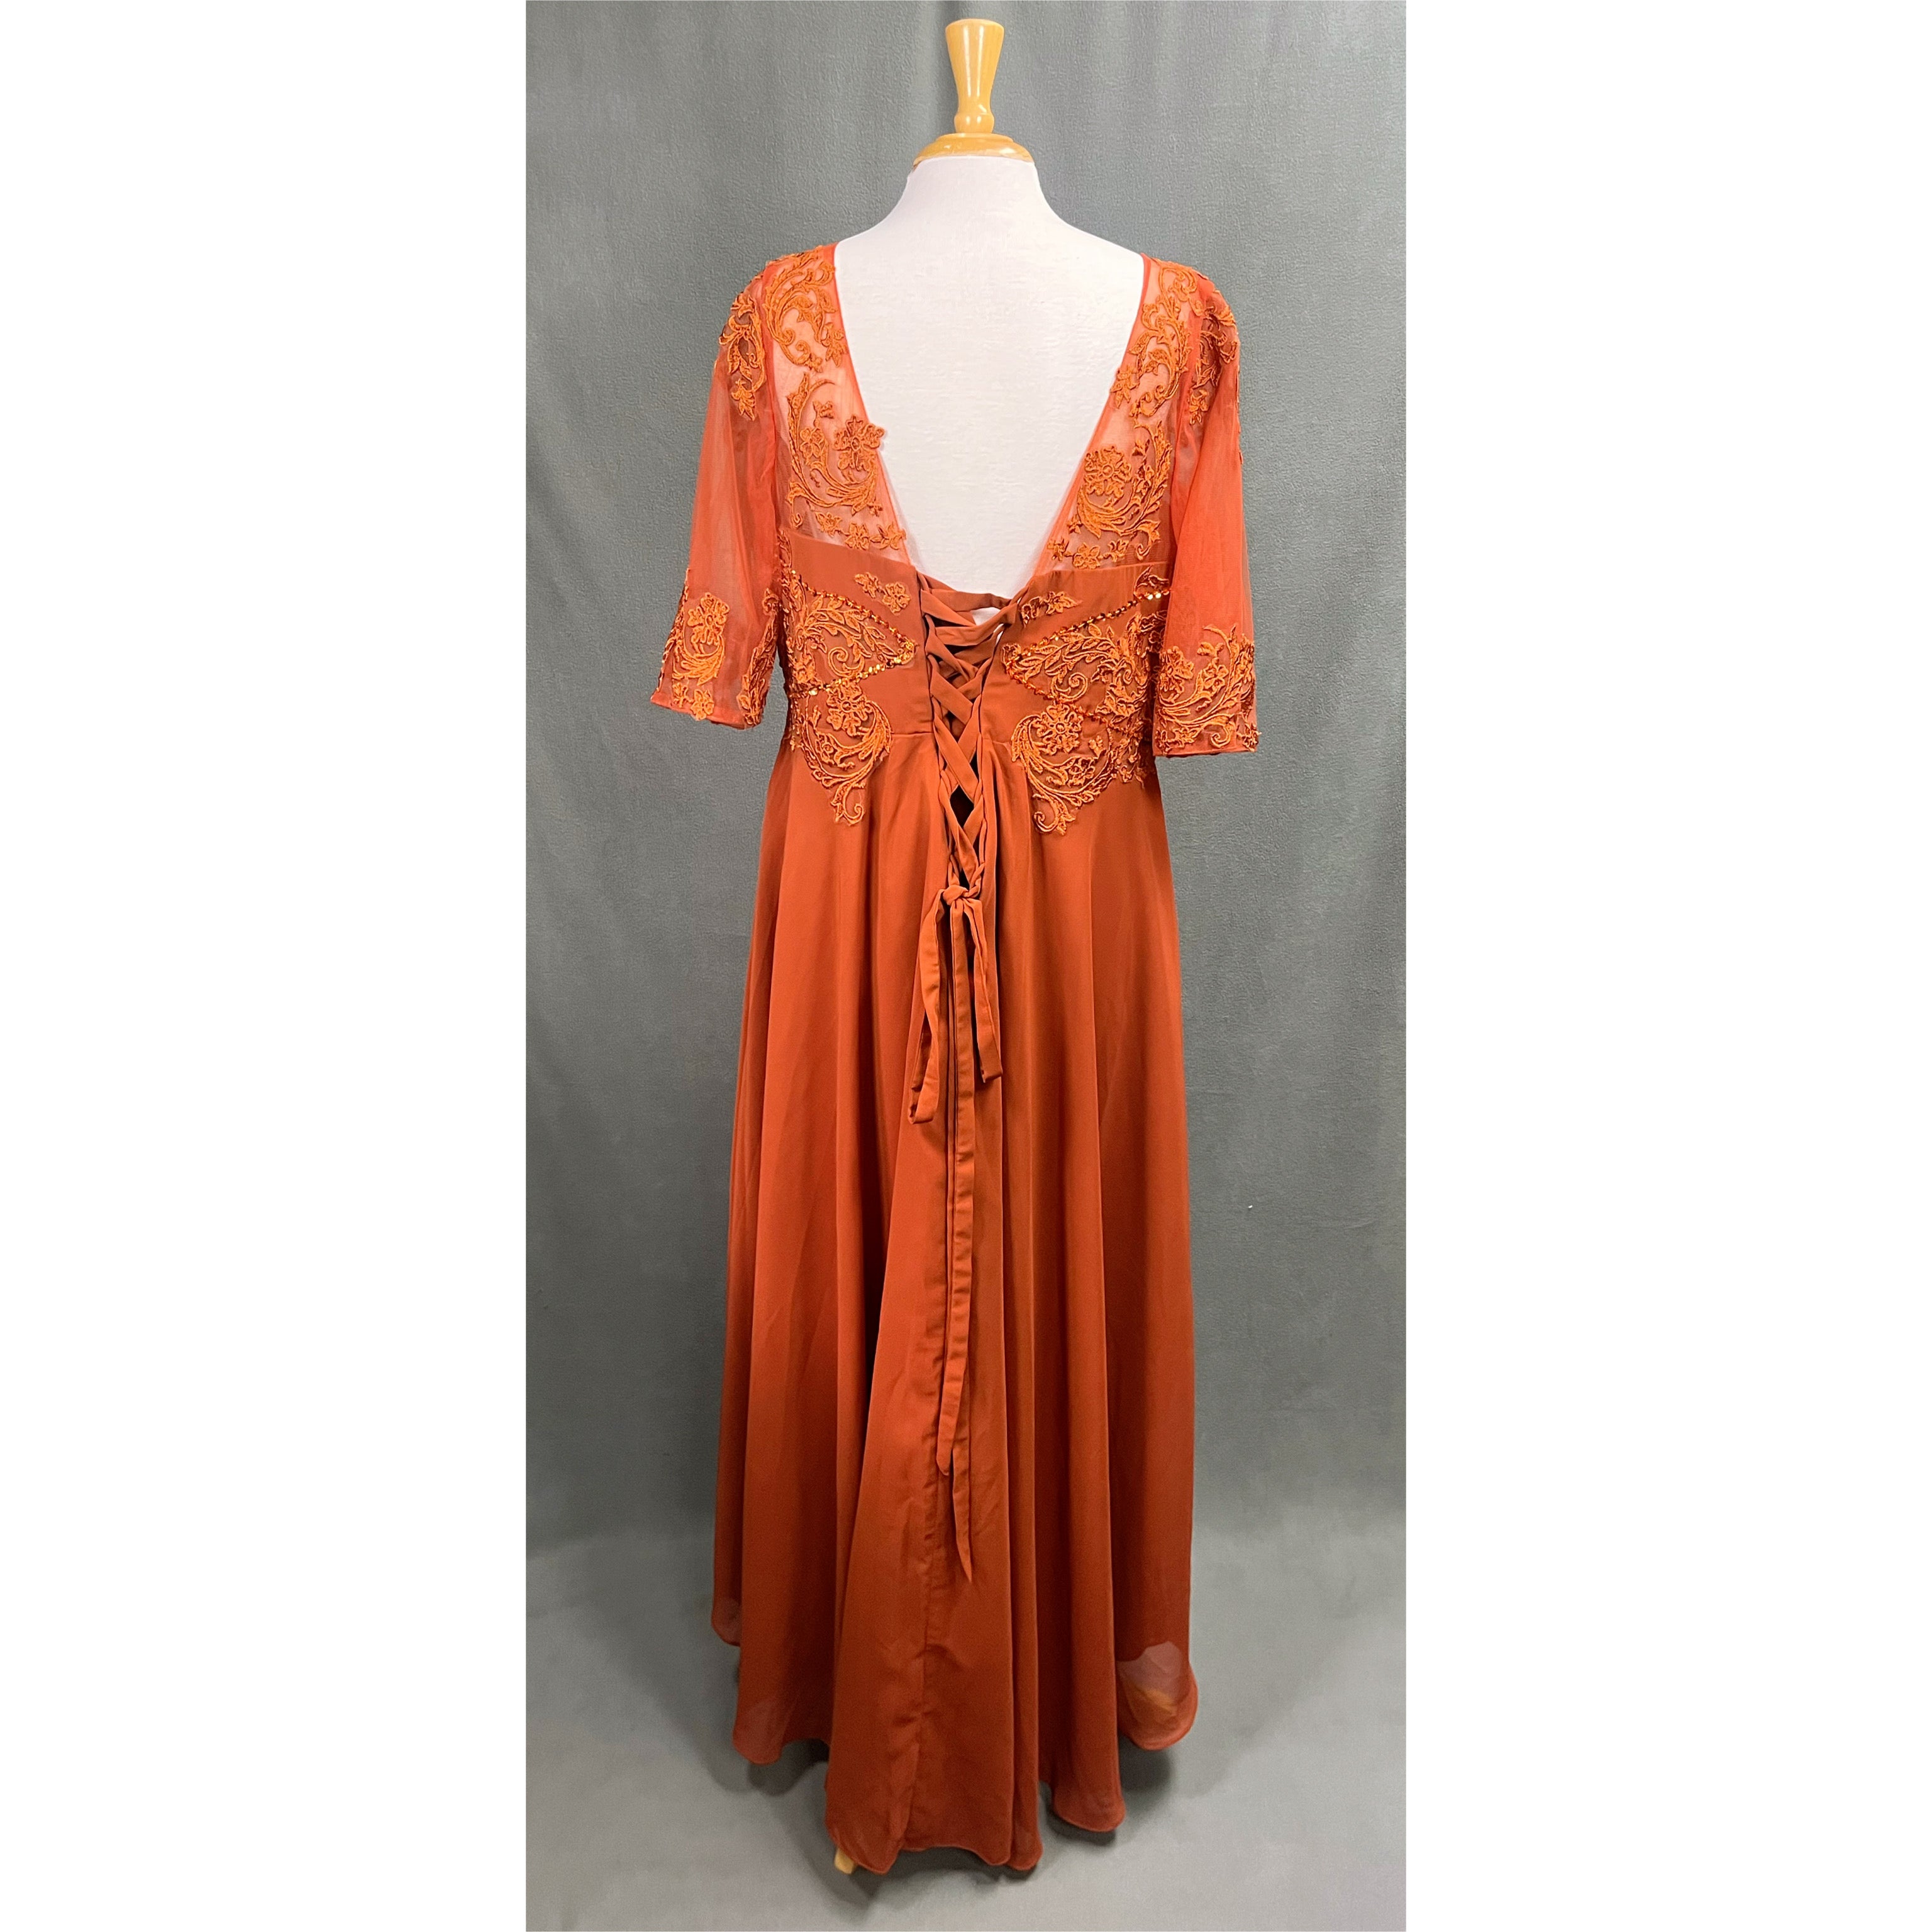 Burnt orange dress, size XXL